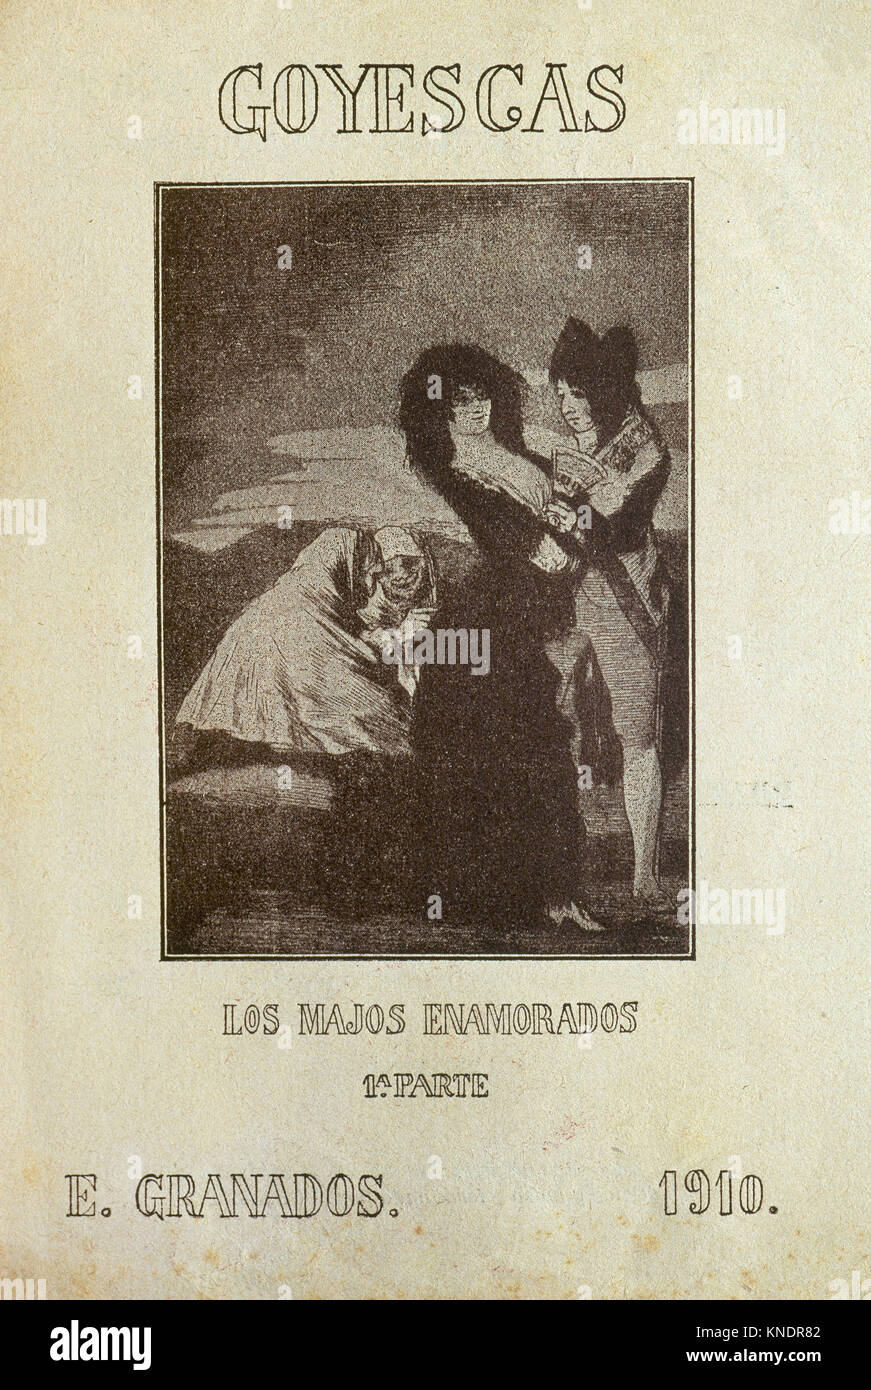 Enrique Granados (1867-1916). Komponist und Pianist. Goyescas. Konzertprogramm. Los Majos Enamorados (Die gallants in der Liebe), erster Teil, 1910. Stockfoto